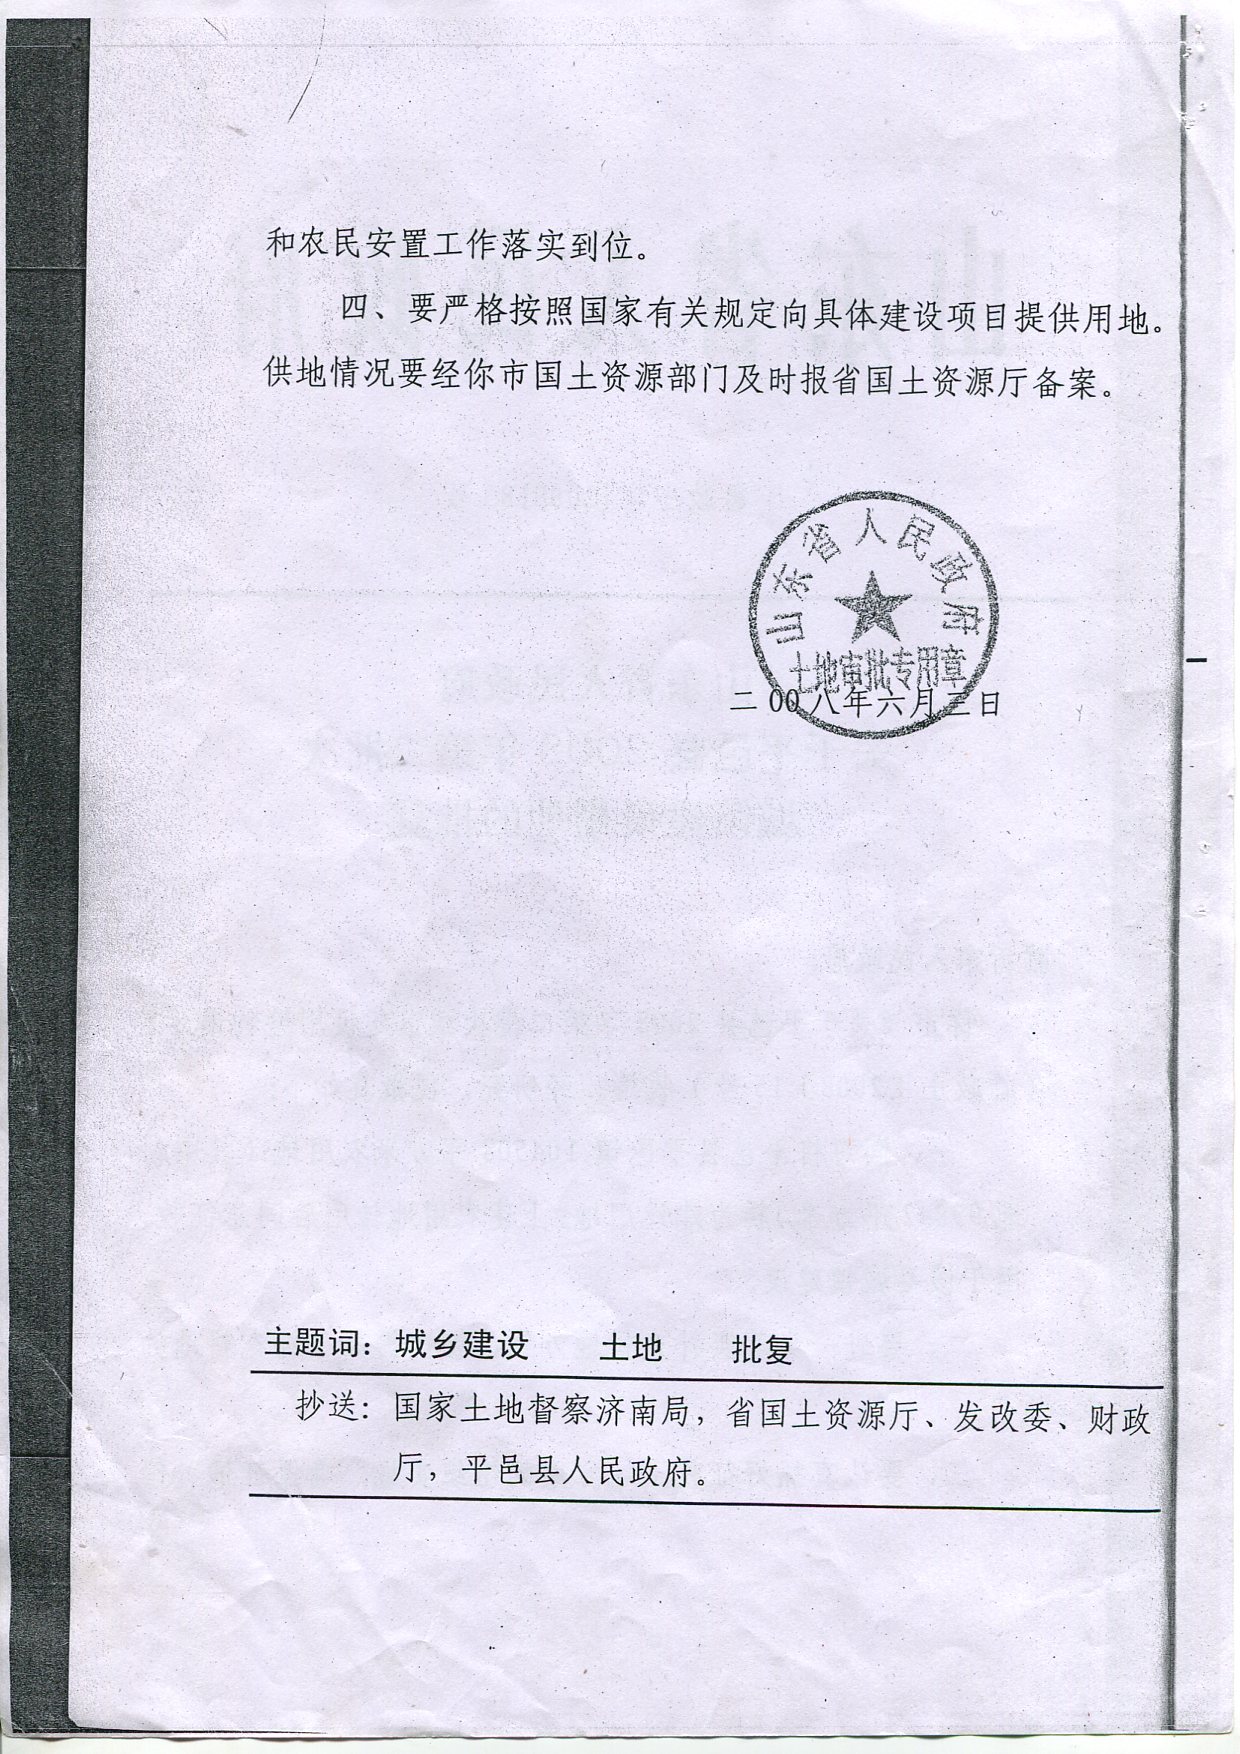 记者见到了这两份盂县官方下发的征地文件